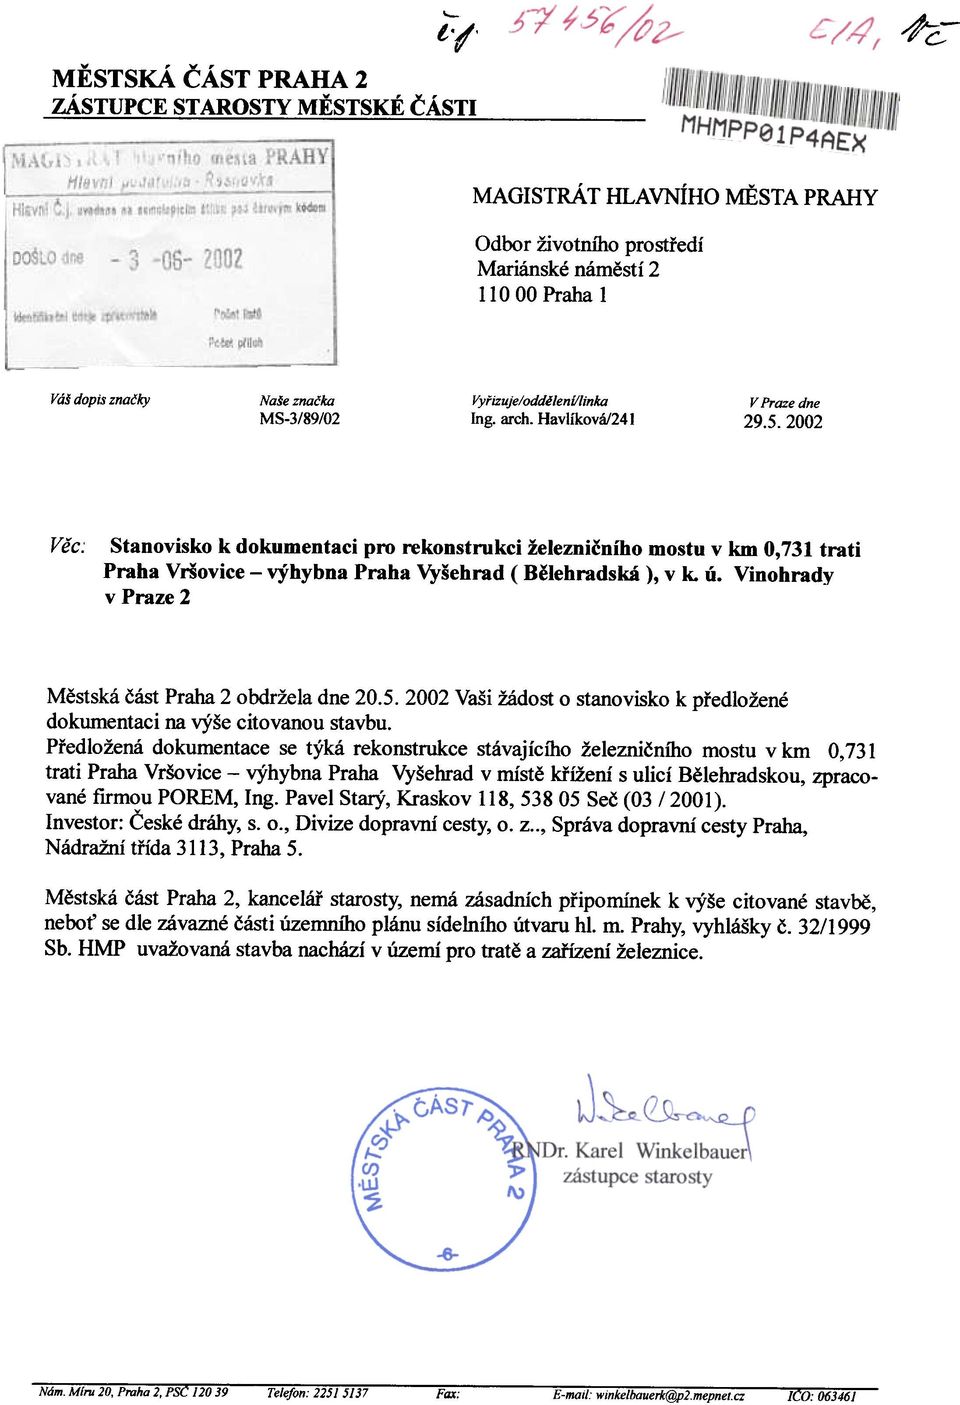 2002 Vìc: Stanovisko k dokumentaci pro rekonstrukci železnièního mostu v km 0,731 trati Praha Vriovice - výhybna Praha Vyšehrad Bìlehradská), v k. ú.